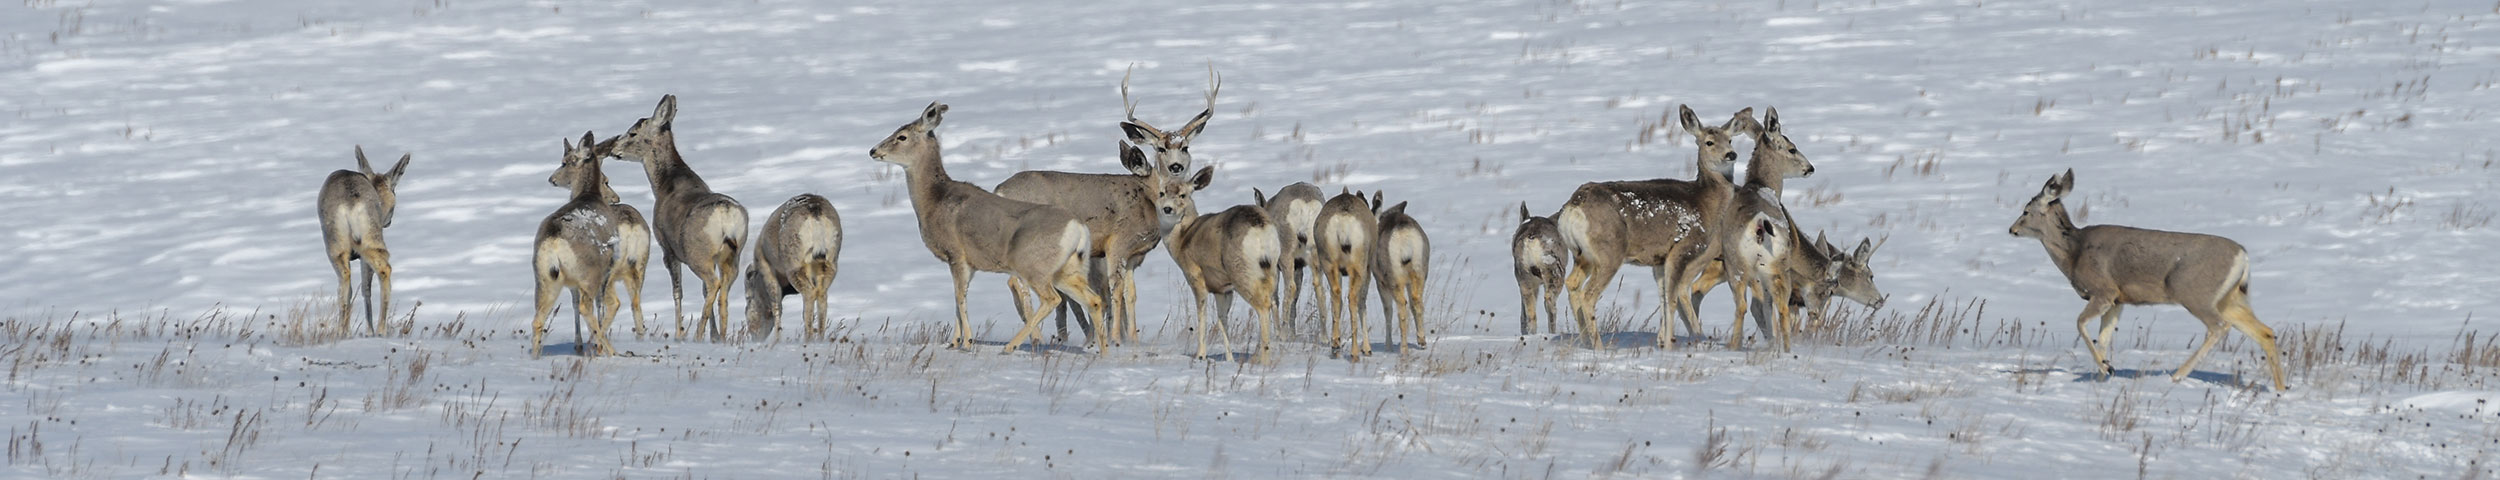 Herd of mule deer in the snow